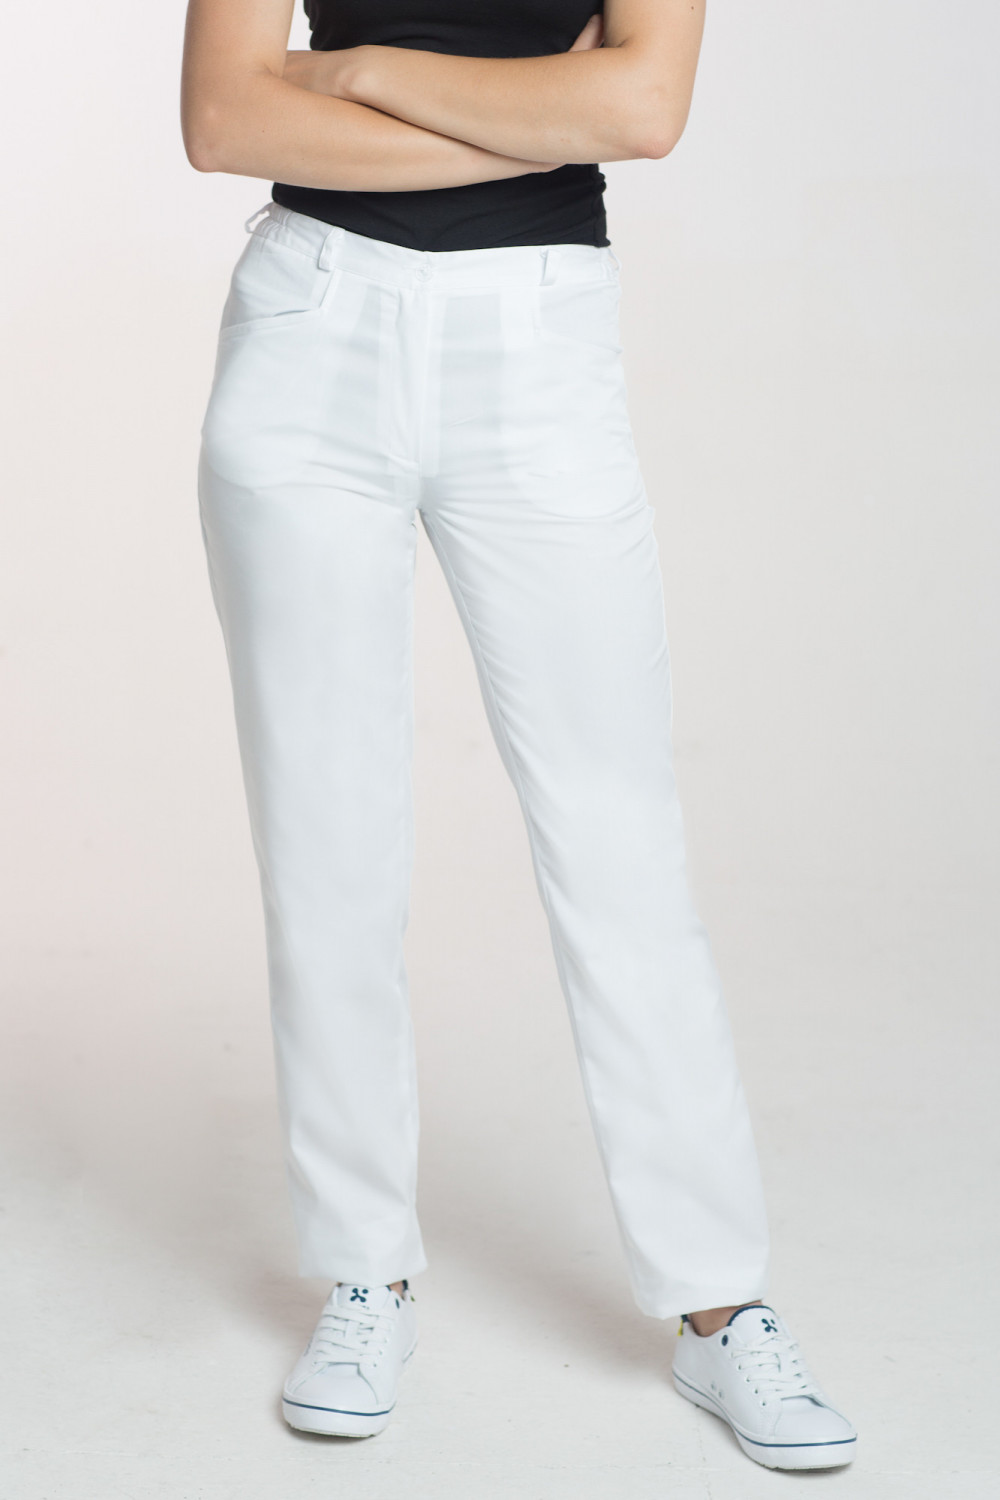 M-348 Spodnie damskie medyczne do fartucha kolor biały